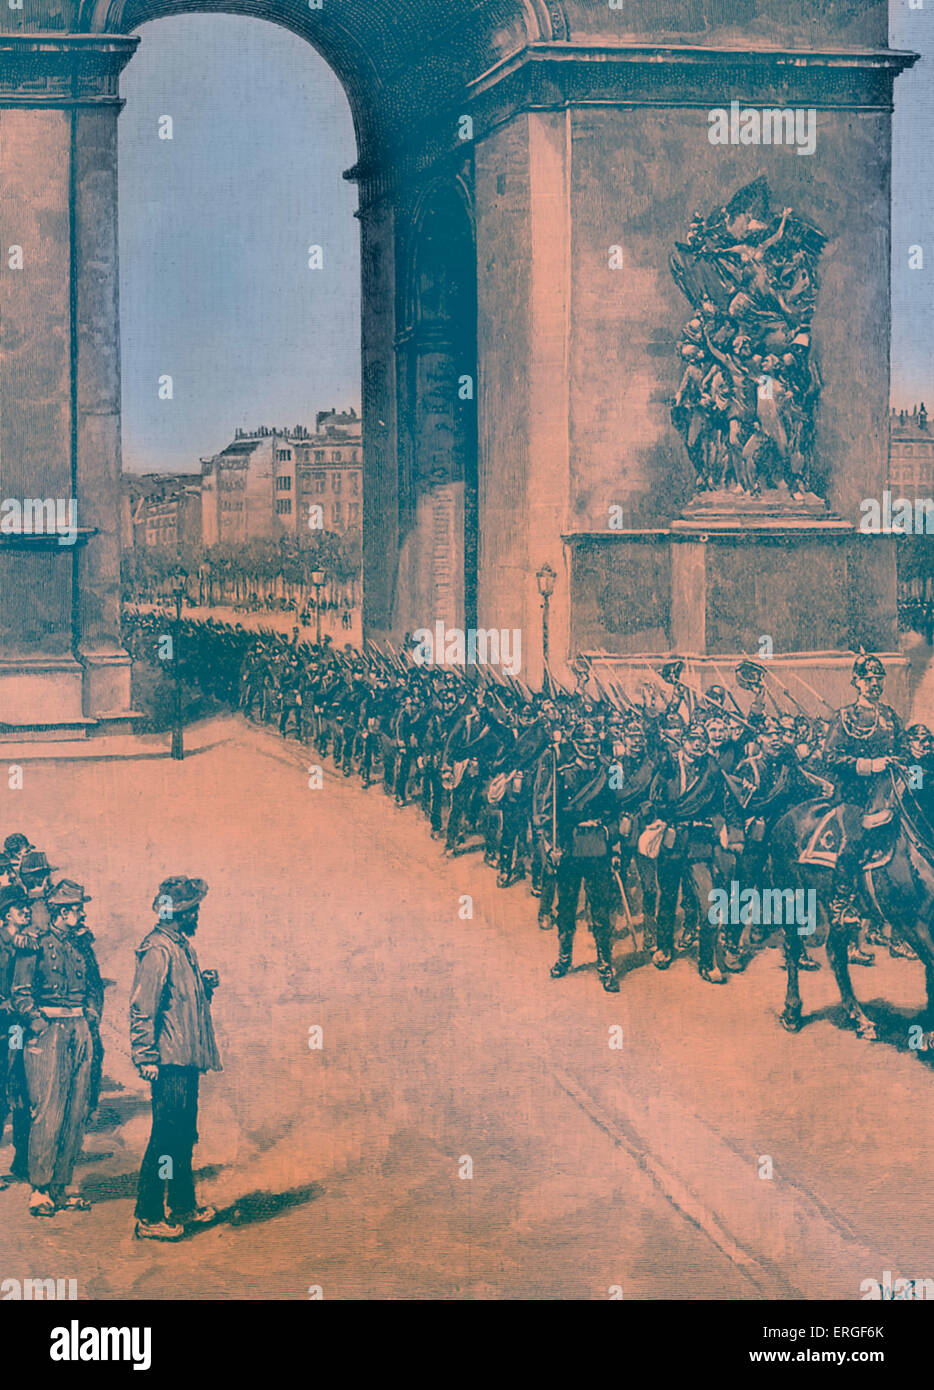 Franco - preussischen Krieg: Preußische Truppen in Paris, Frankreich, 1870. Unterquerung der Arc de Triomphe während Belagerung von Paris (19 Stockfoto